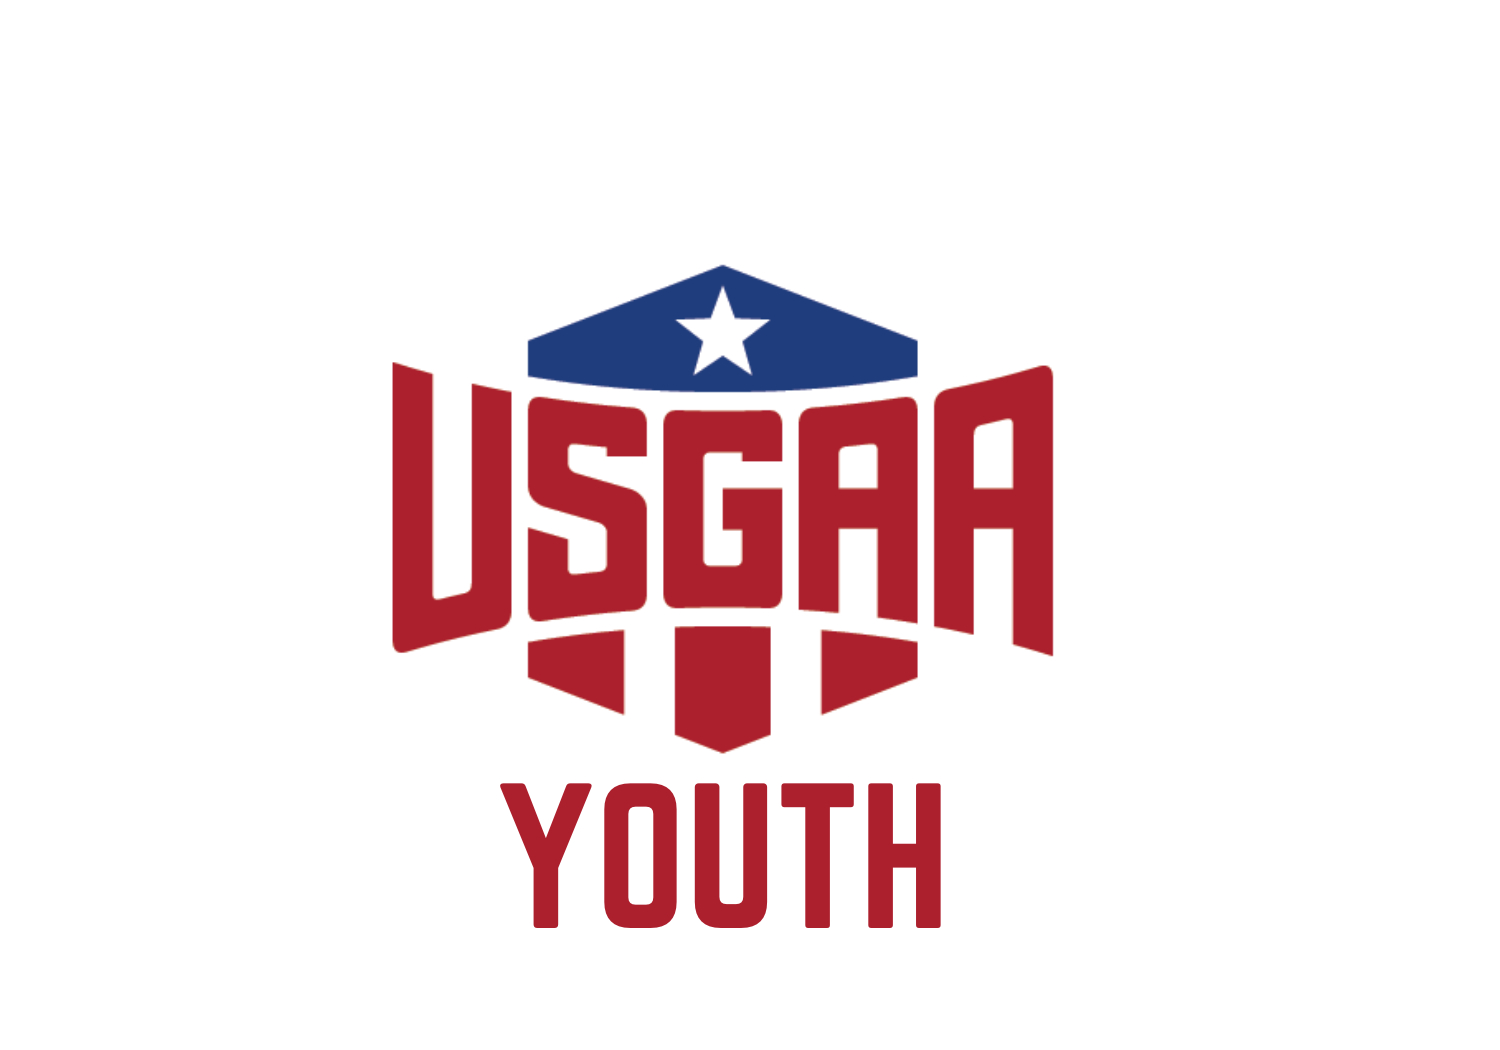 USGAA Youth